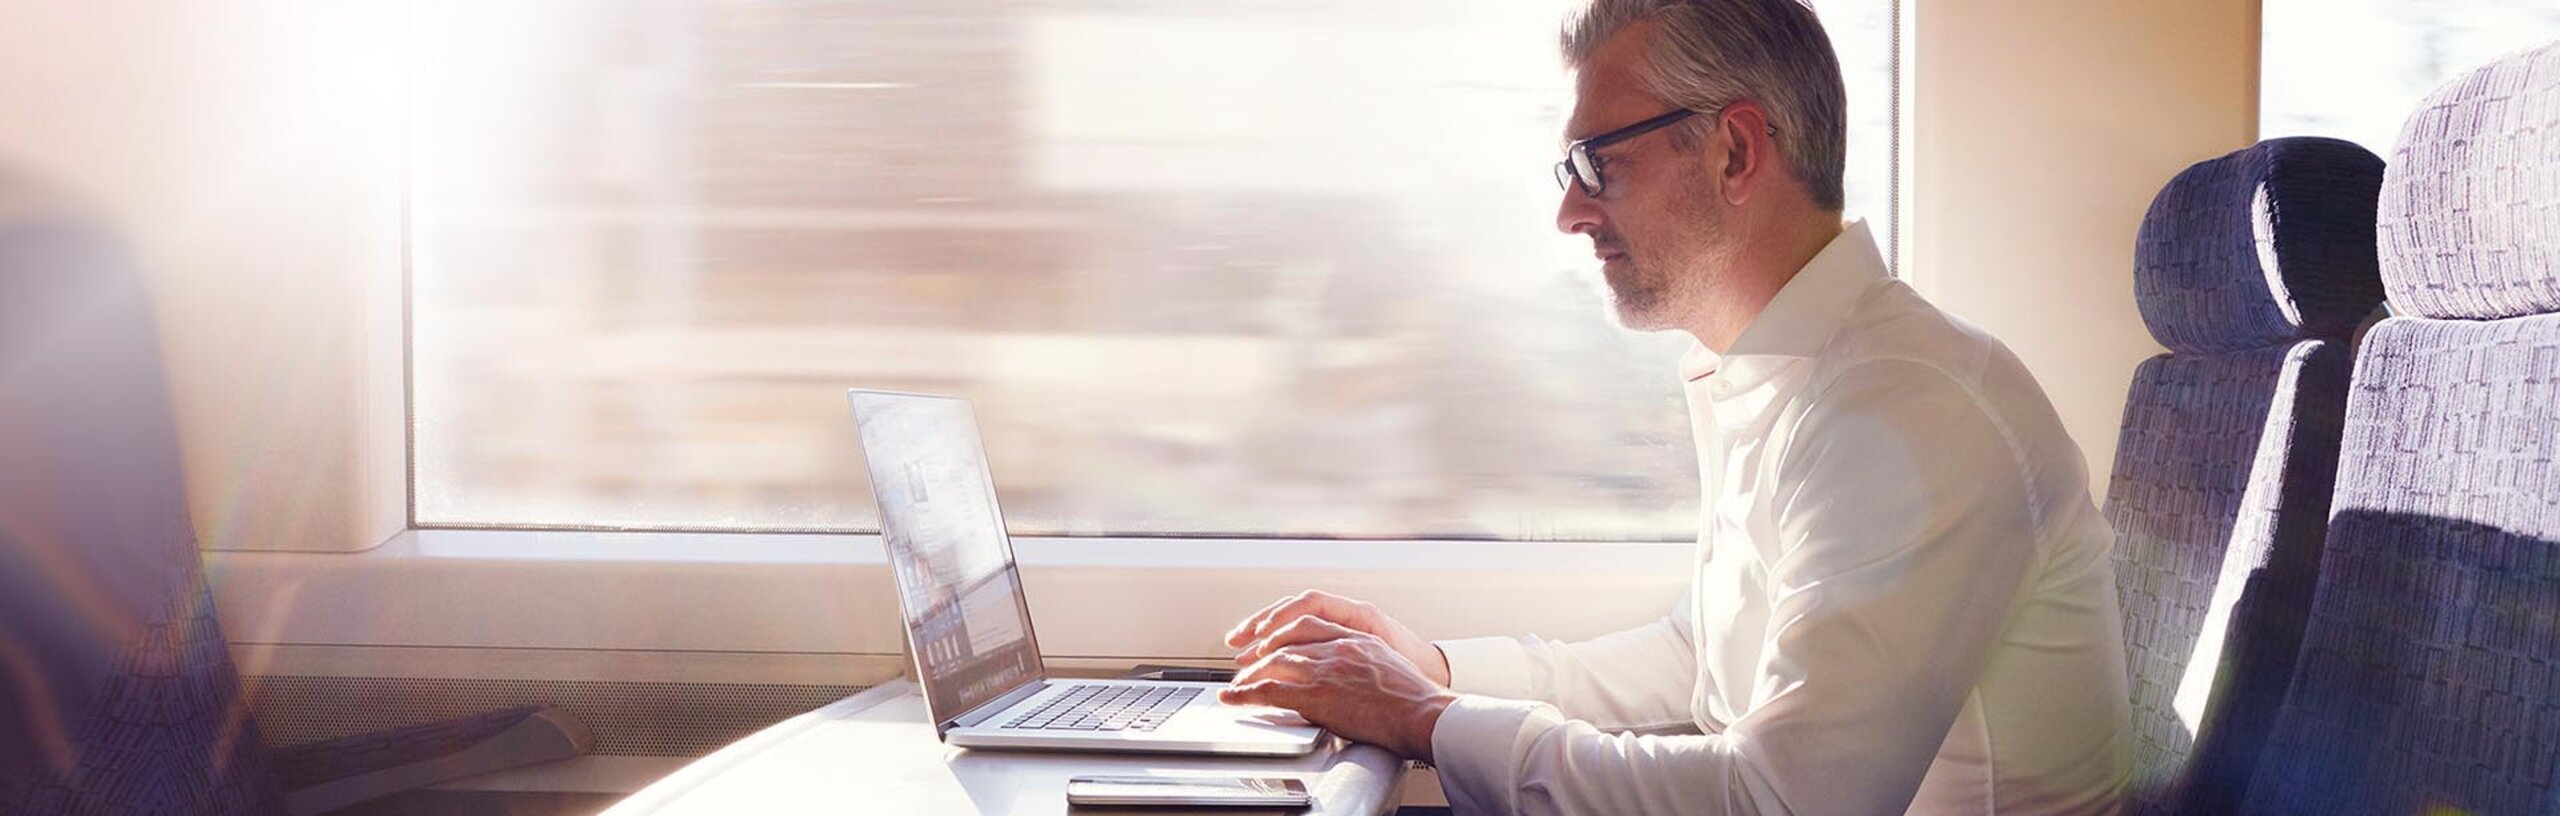 Ein Mann im weißen Hemd im Zug mit Laptop und Smartphone auf dem Tisch